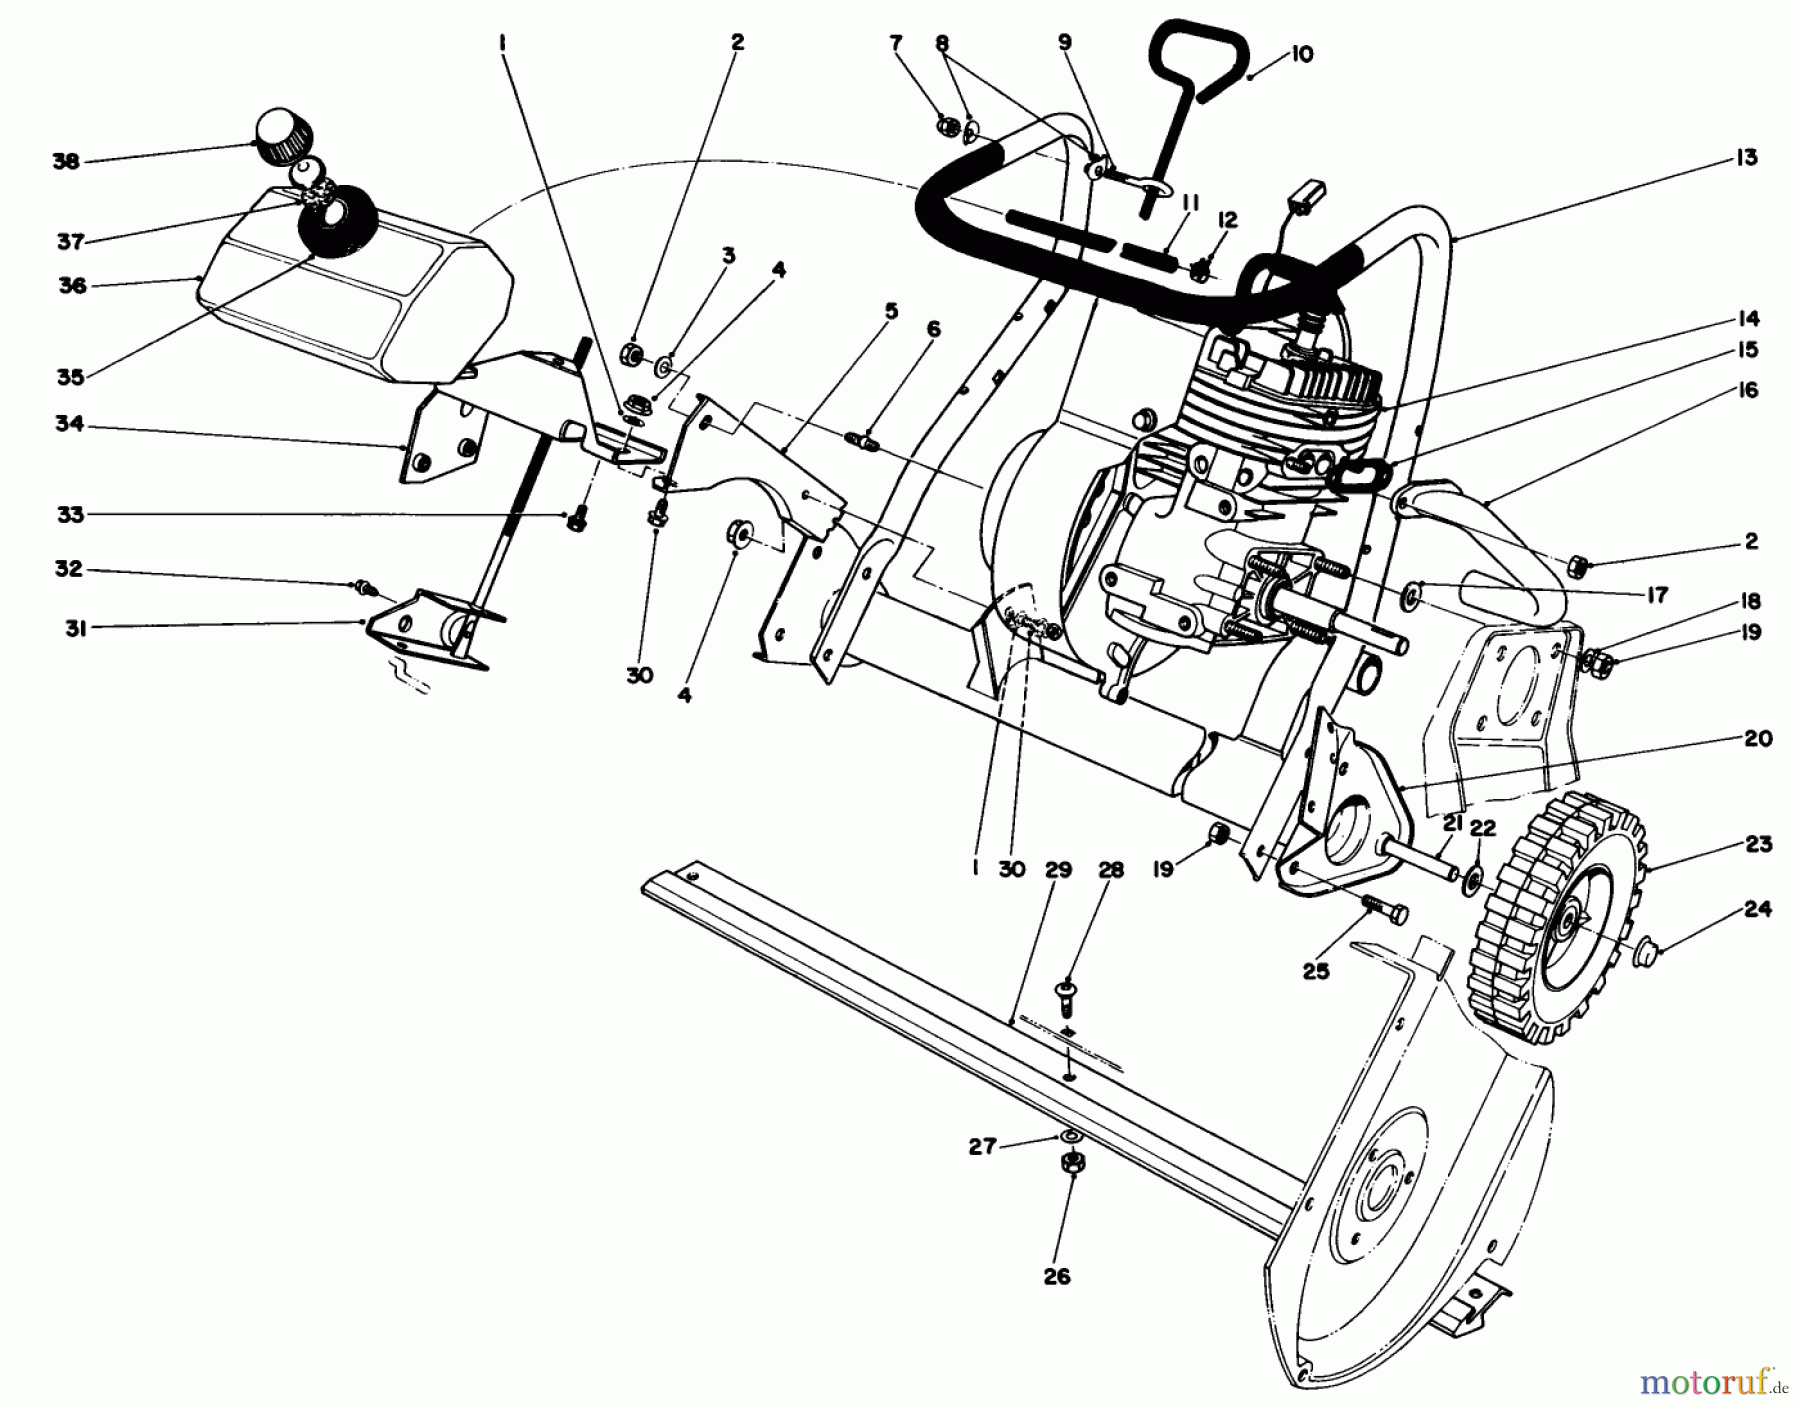  Toro Neu Snow Blowers/Snow Throwers Seite 1 38165 (S-620) - Toro S-620 Snowthrower, 1988 (8000001-8999999) ENGINE ASSEMBLY